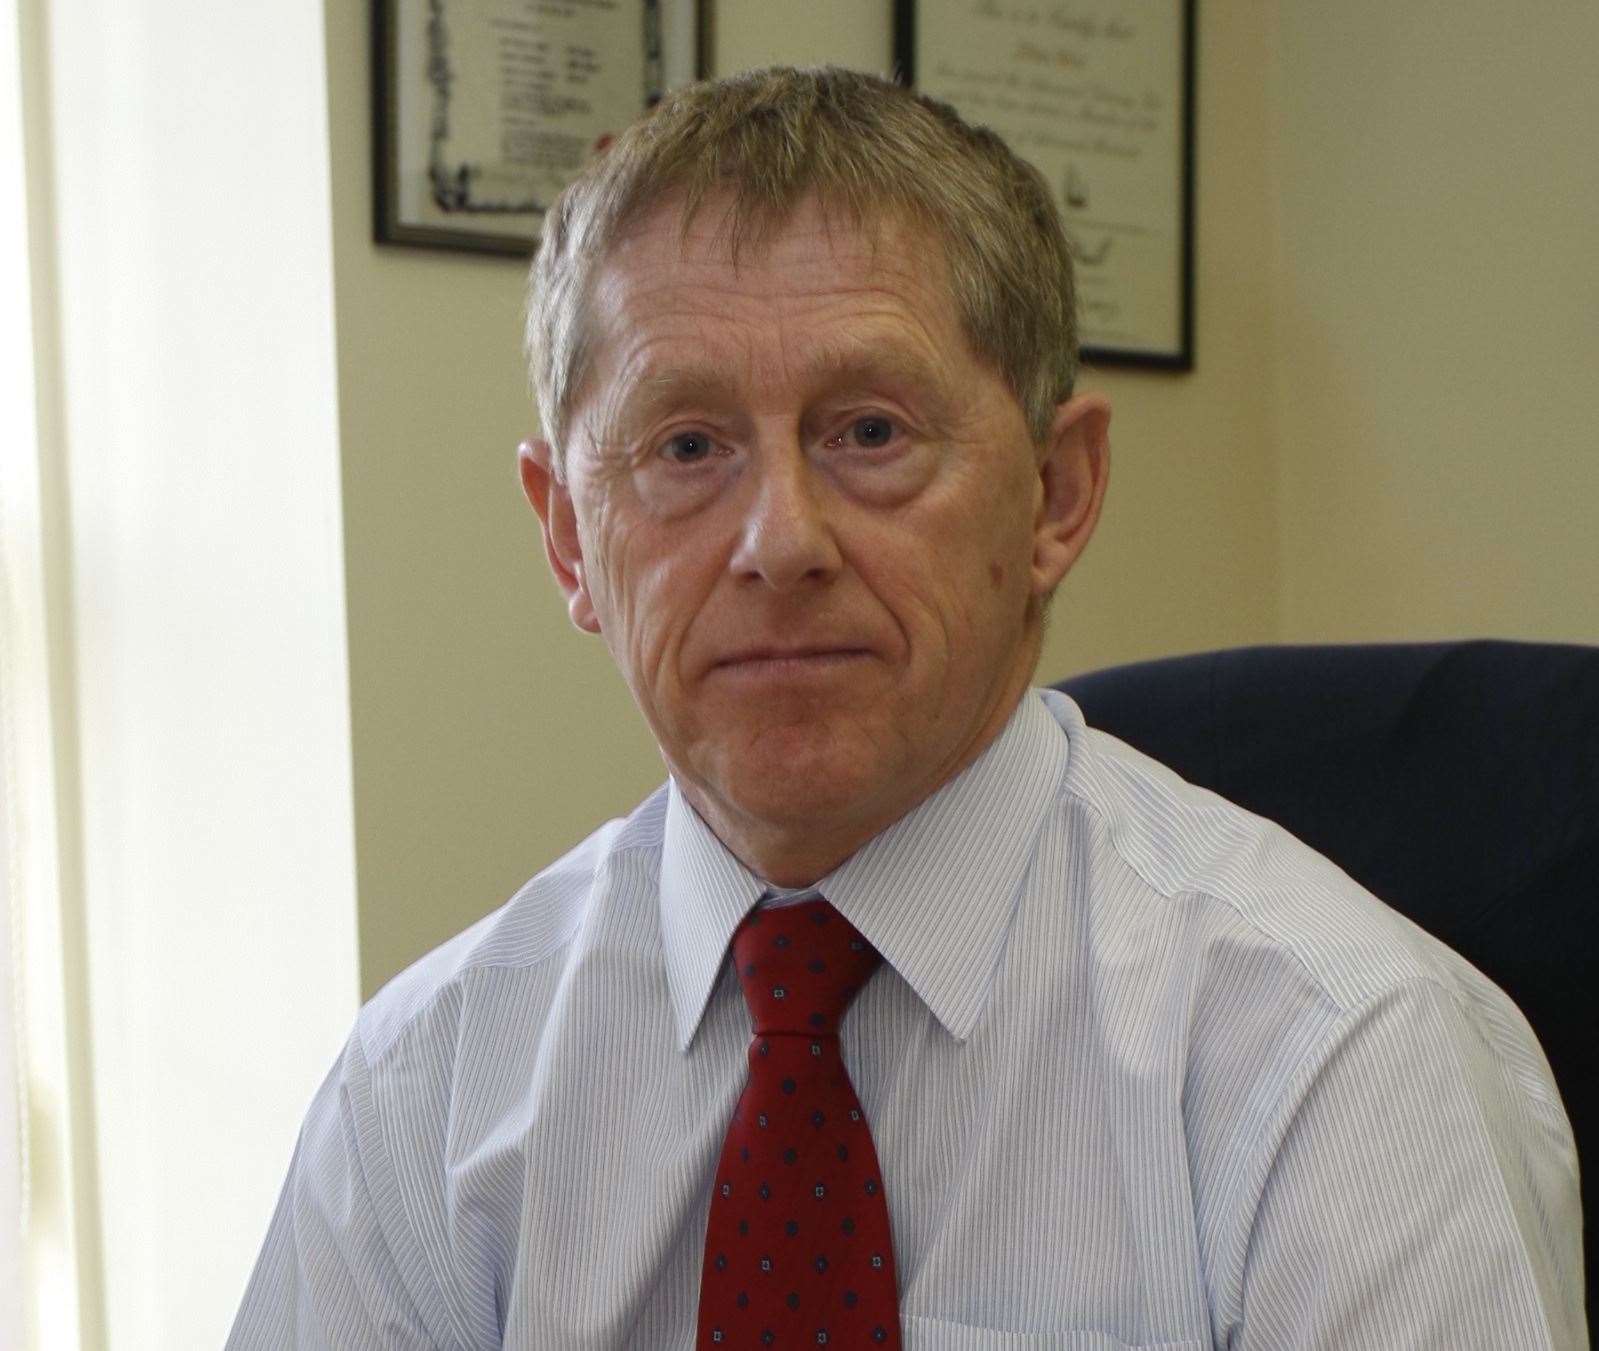 Funeral director John Weir has offered a reward